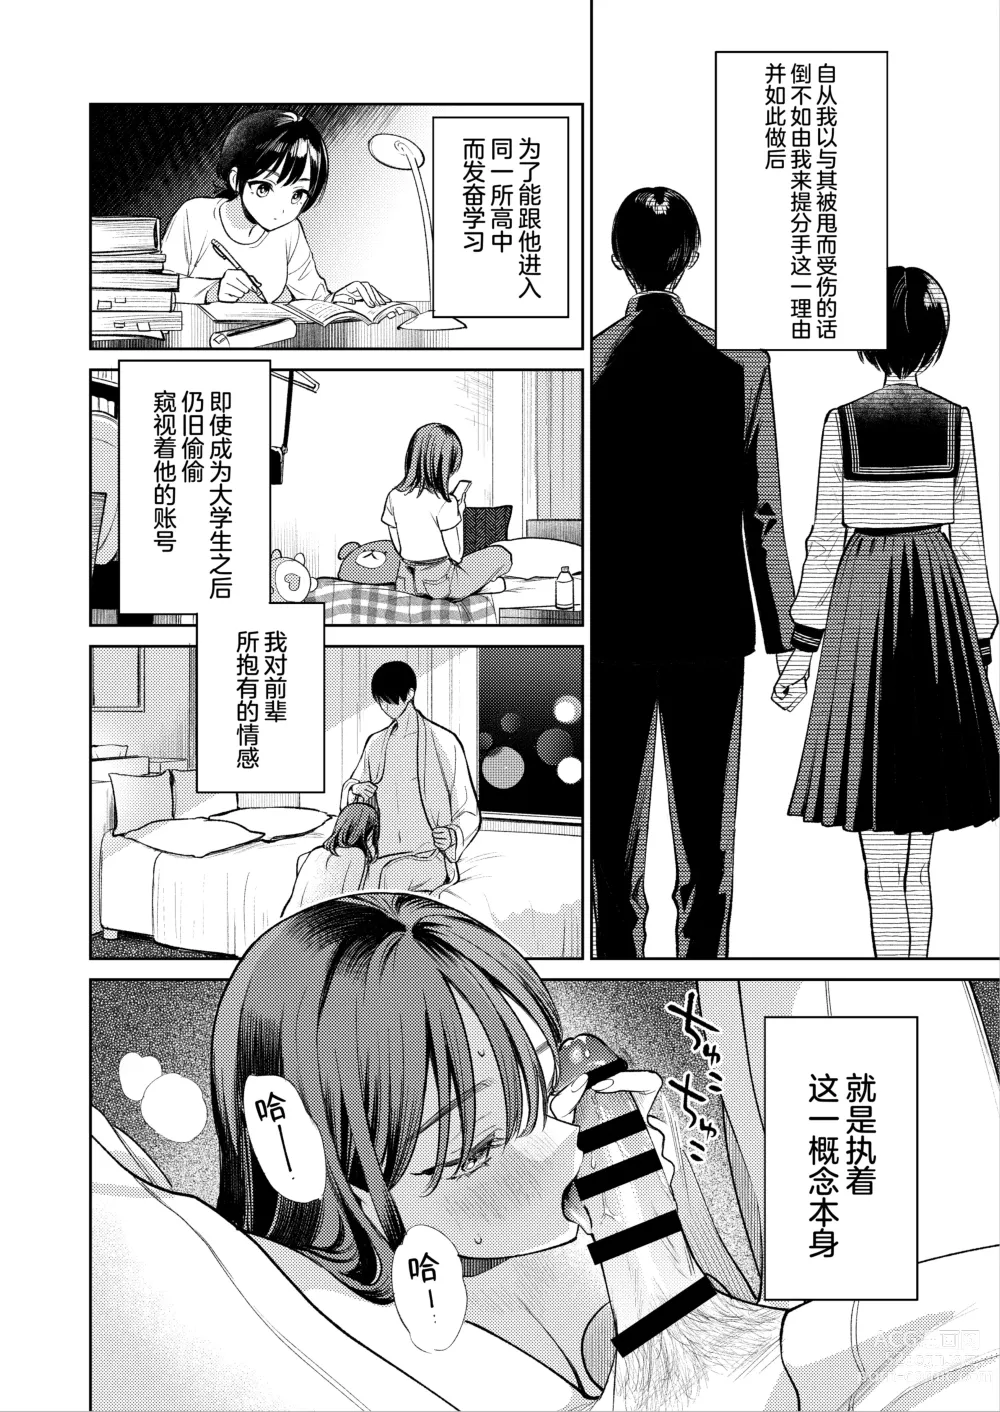 Page 39 of doujinshi Senpai, Sonna no Shiranai desu ~Bansou shite ita Kare no Yubi wa Ima, Watashi no Naka o Midashiteru~